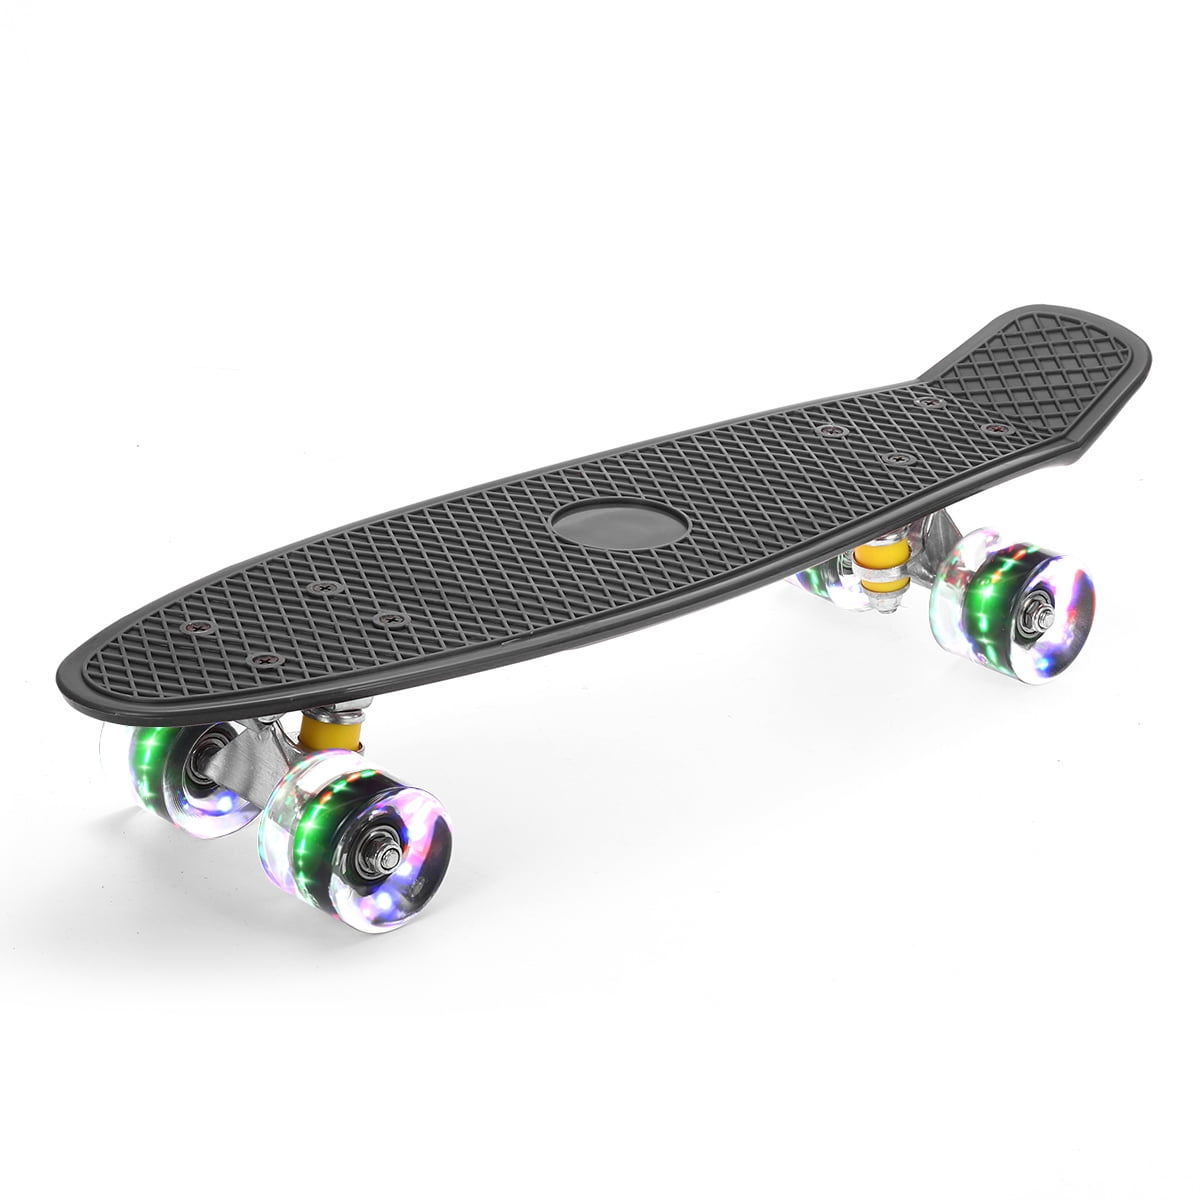 XUDREZ 22 Inch Mini Cruiser Skateboard Complete Retro Penny board for Kids Teens 